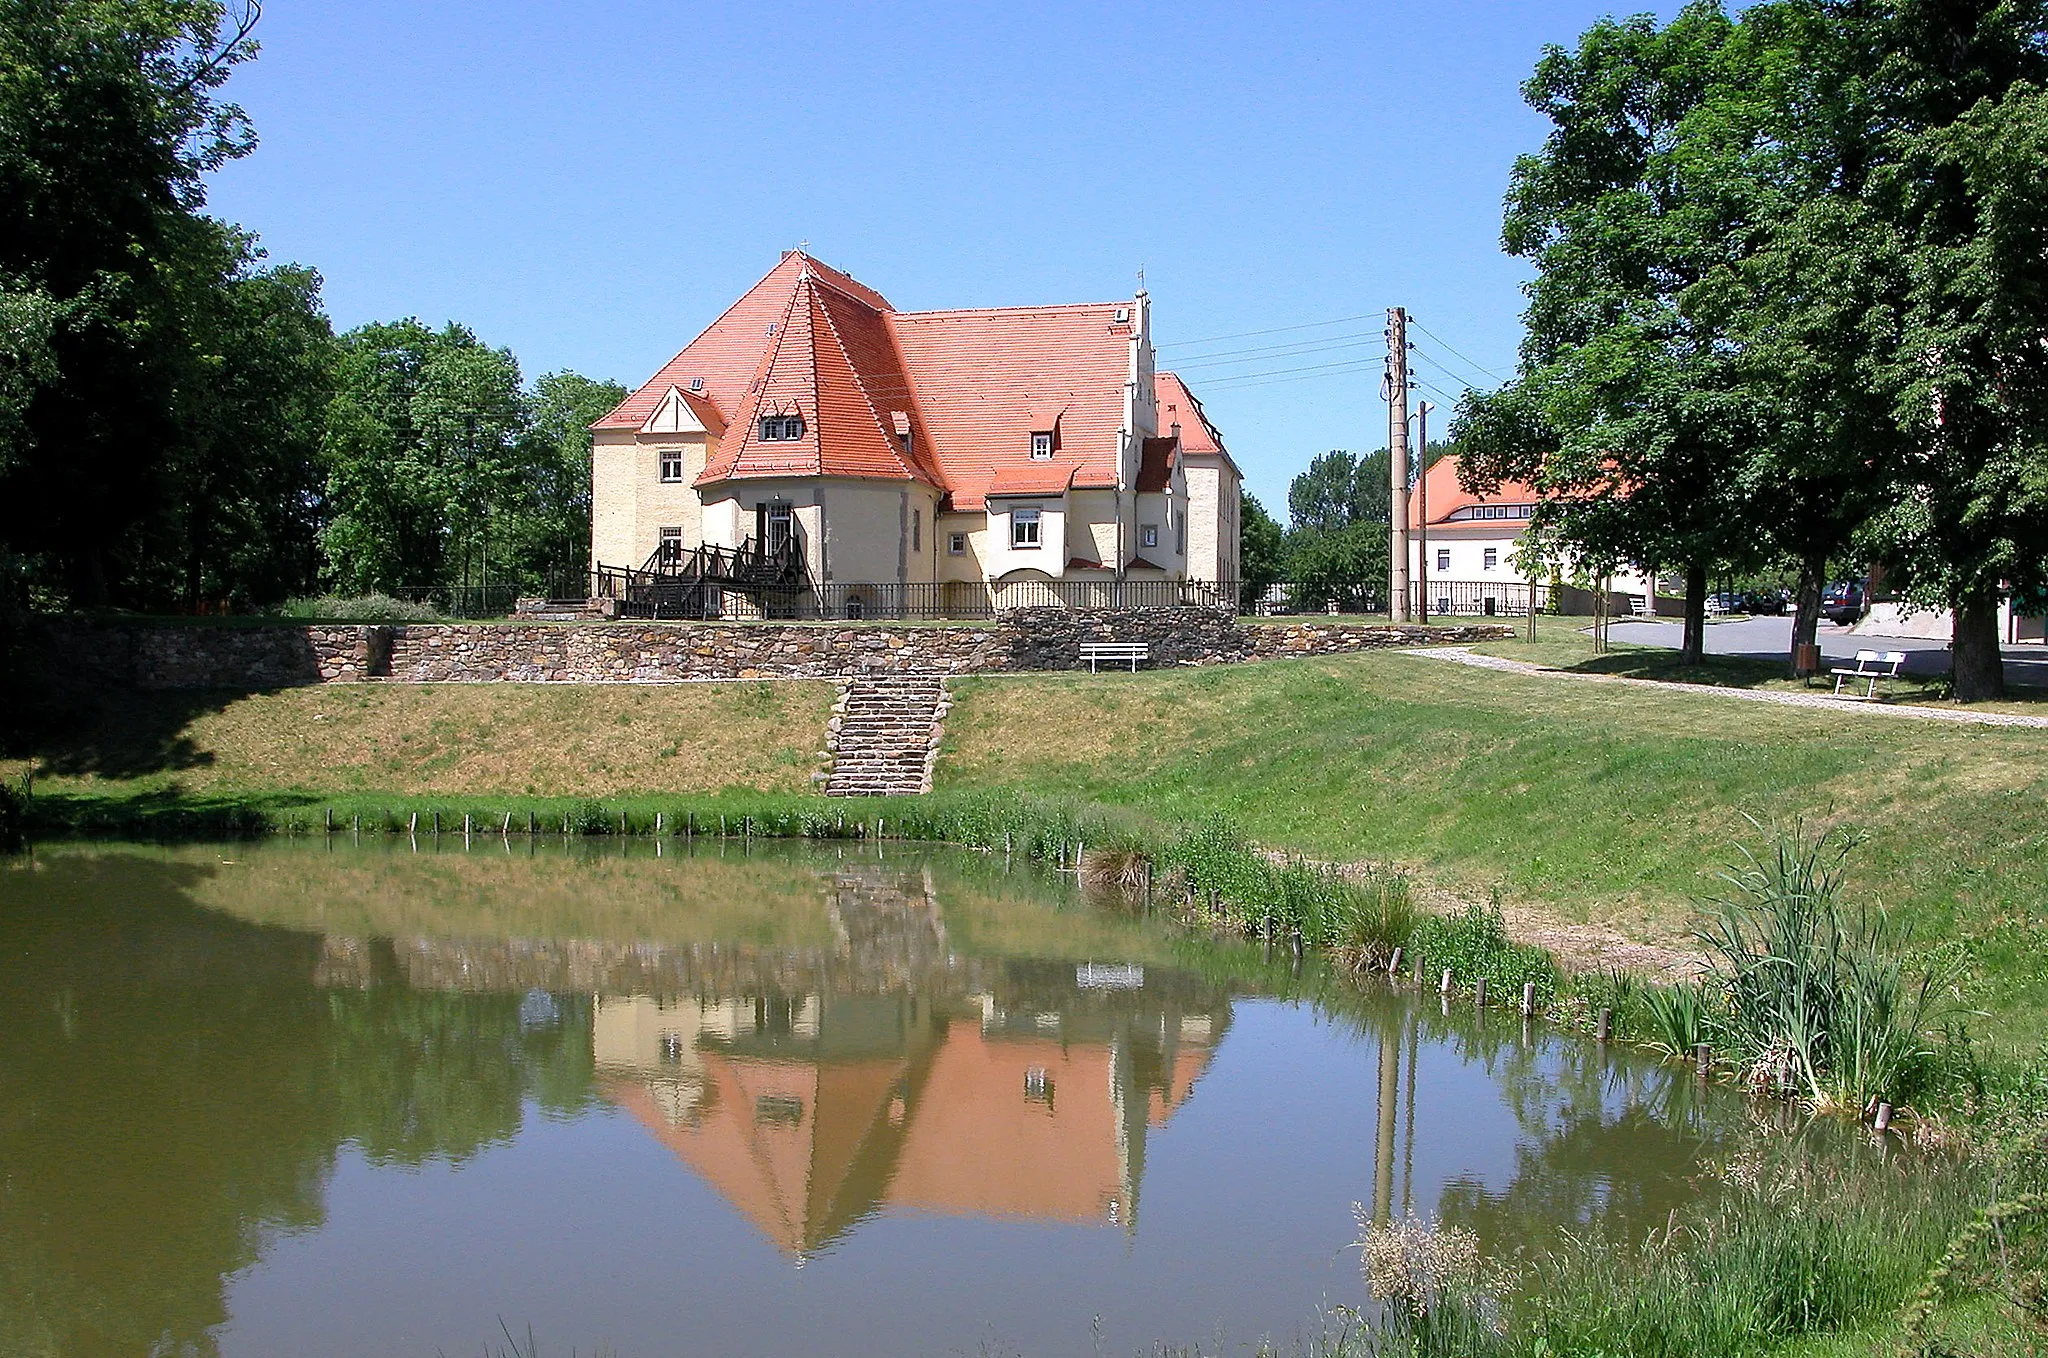 Photo showing: 30.05.2003  01623  Schleinitz (Nossen): Aus mittelalterlicher Wasserburg hervorgegangenes Schloß.
[DSCN]20030530040DR.JPG(c)Blobelt